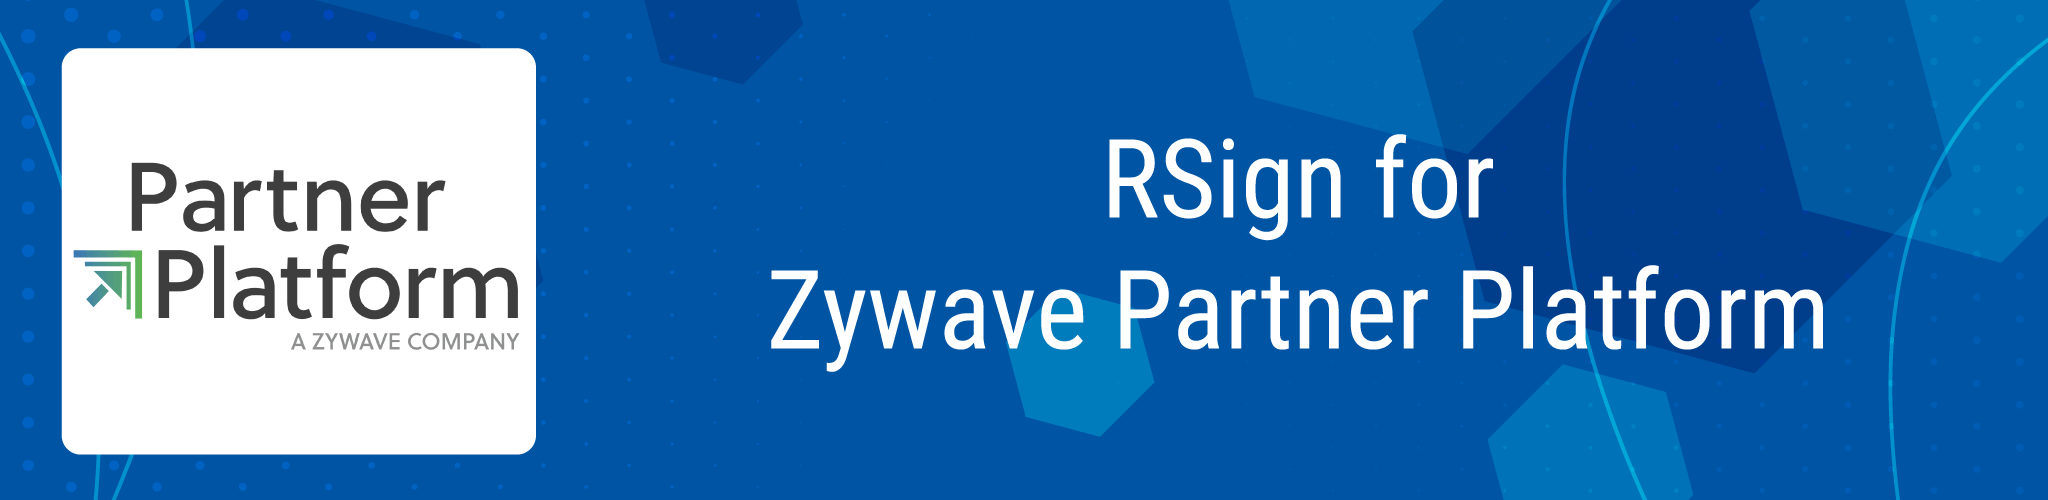 RSign for Zywave Partner Platform